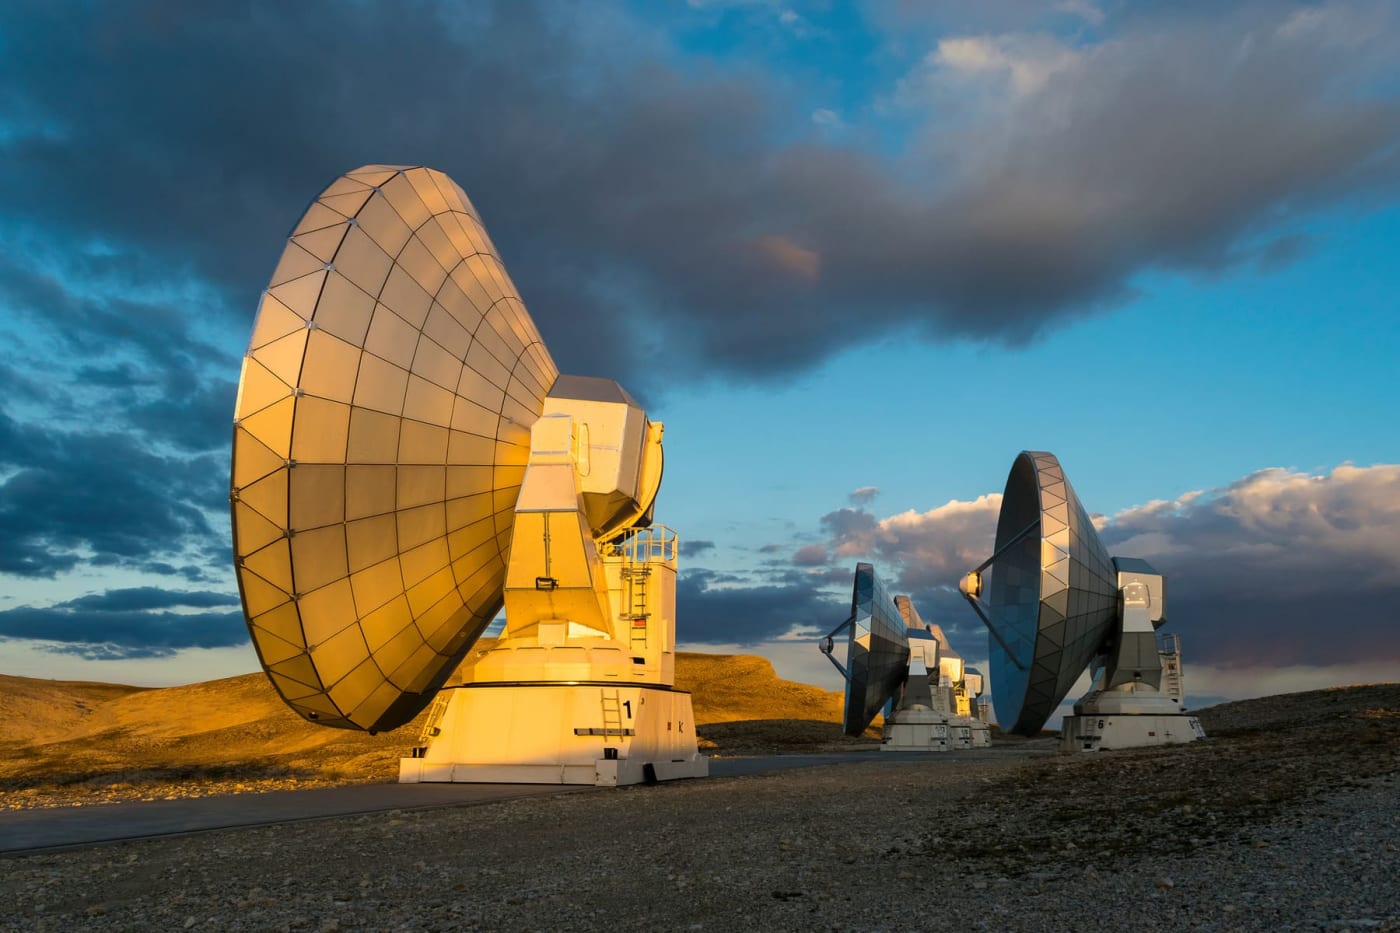 L'observatoire du plateau de Bure et ses antennes paraboliques géantes